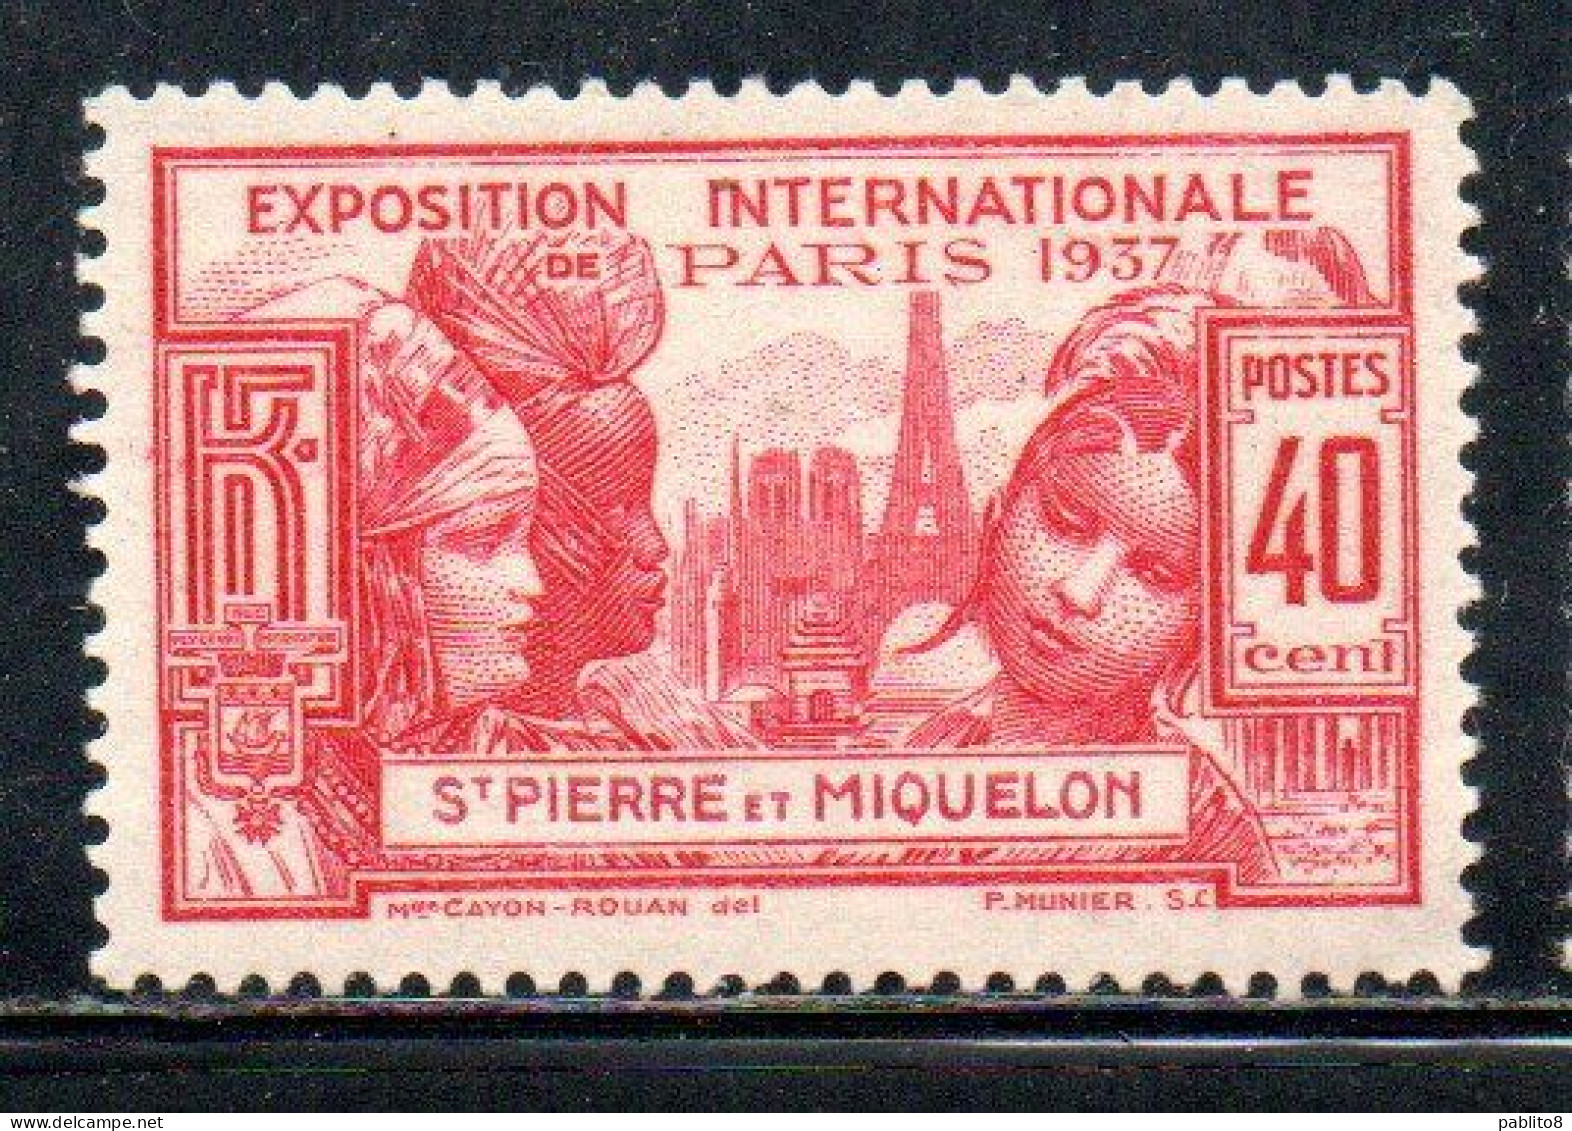 ST. SAINT PIERRE AND ET MIQUELON 1937 PARIS INTERNATIONAL EXPOSITION ISSUE 40c MLH - Nuovi